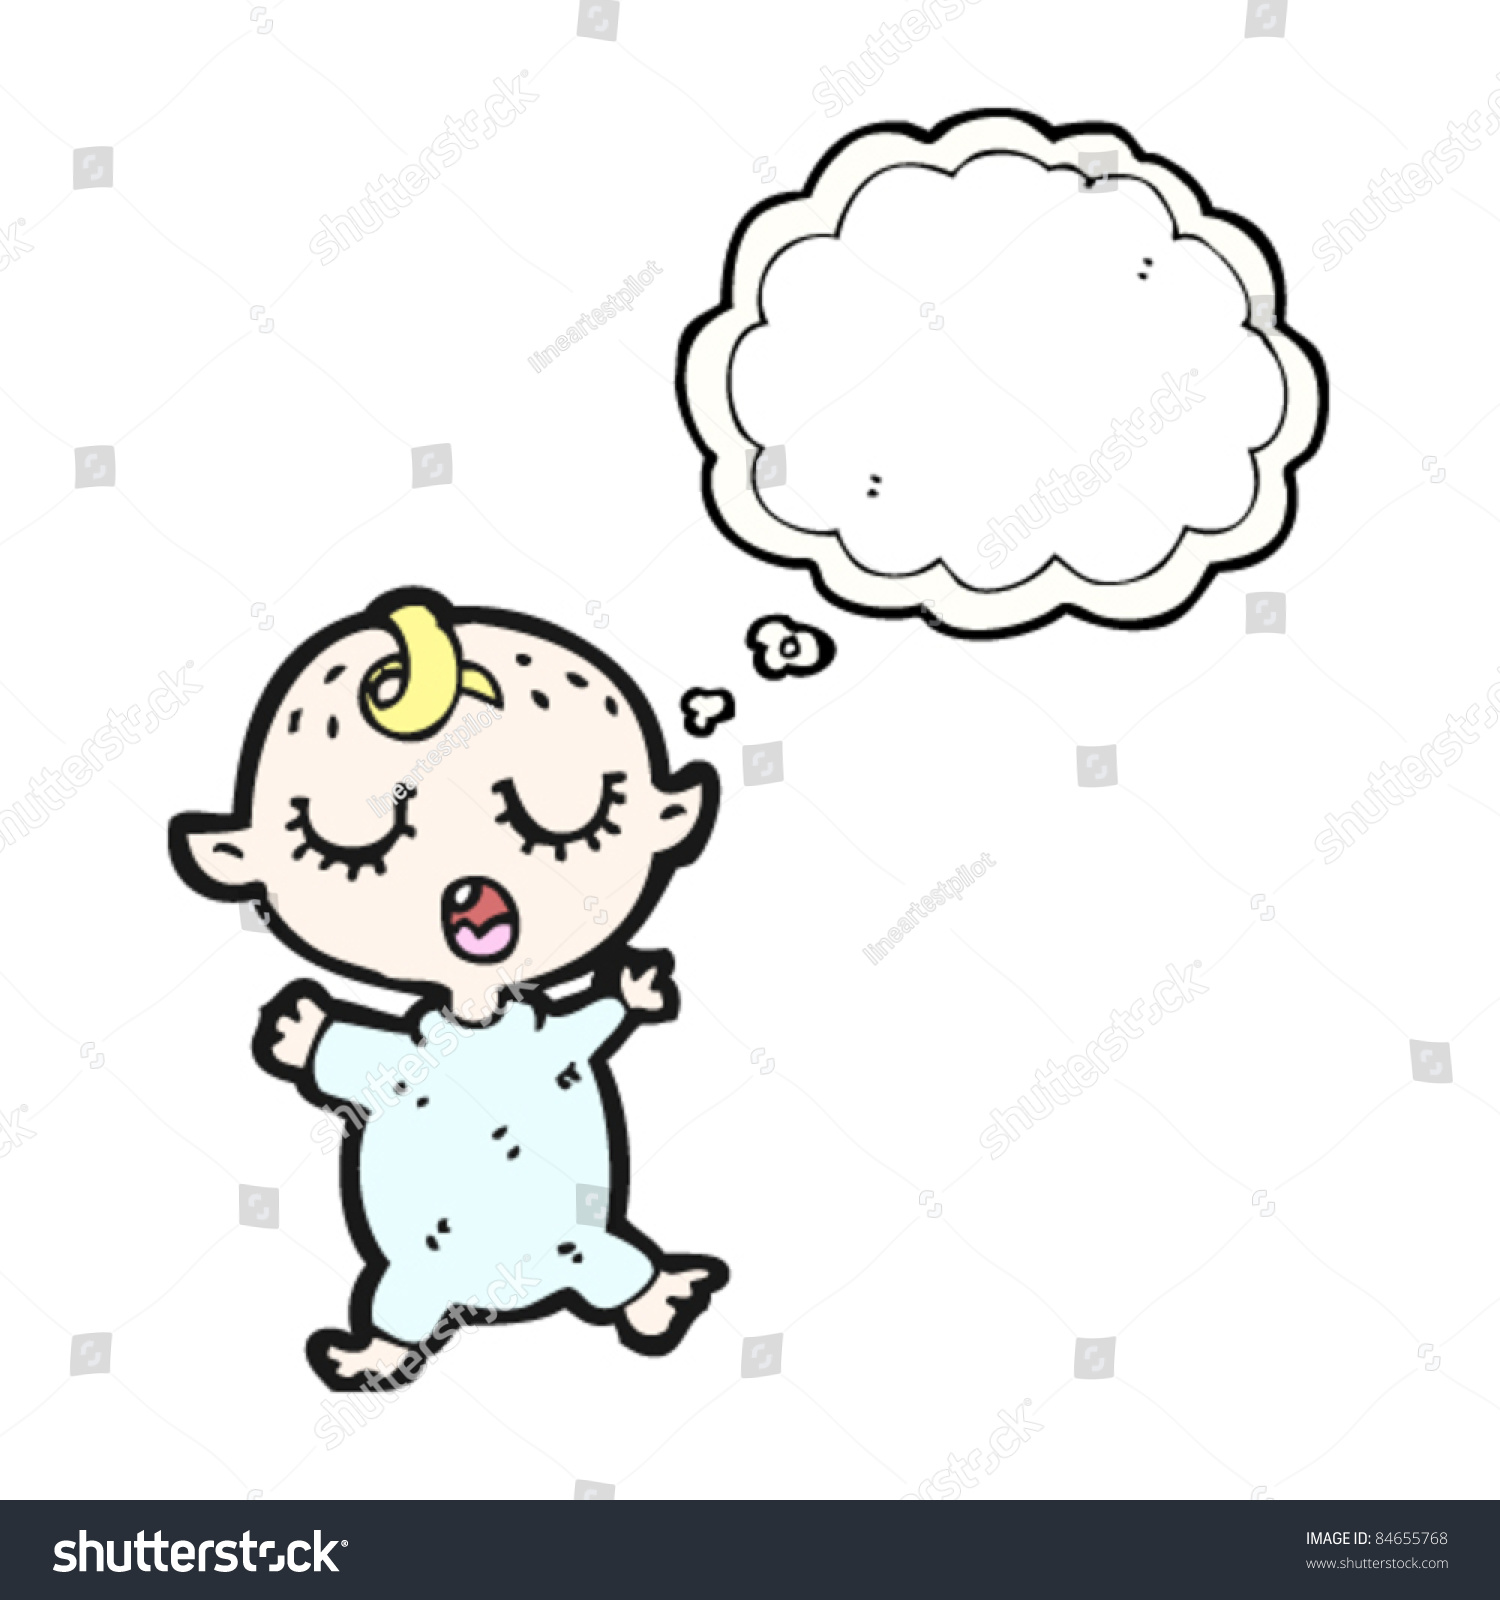 Cartoon Sleeping Baby Stock Vector 84655768 - Shutterstock